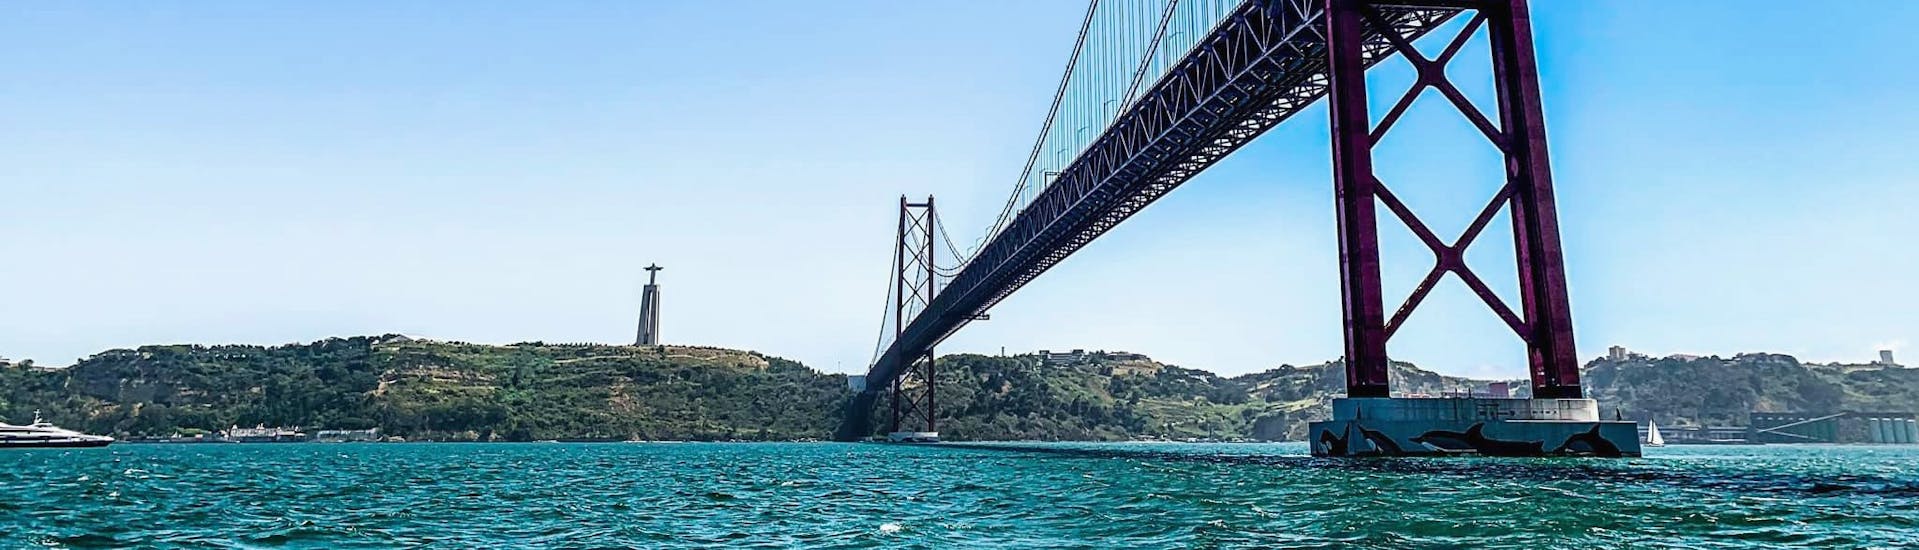 Vistas del Puente 25 de Abril durante el paseo turístico en barco por el Tajo incl. Ponte 25 Abril con Rent a Boat Lisbon.